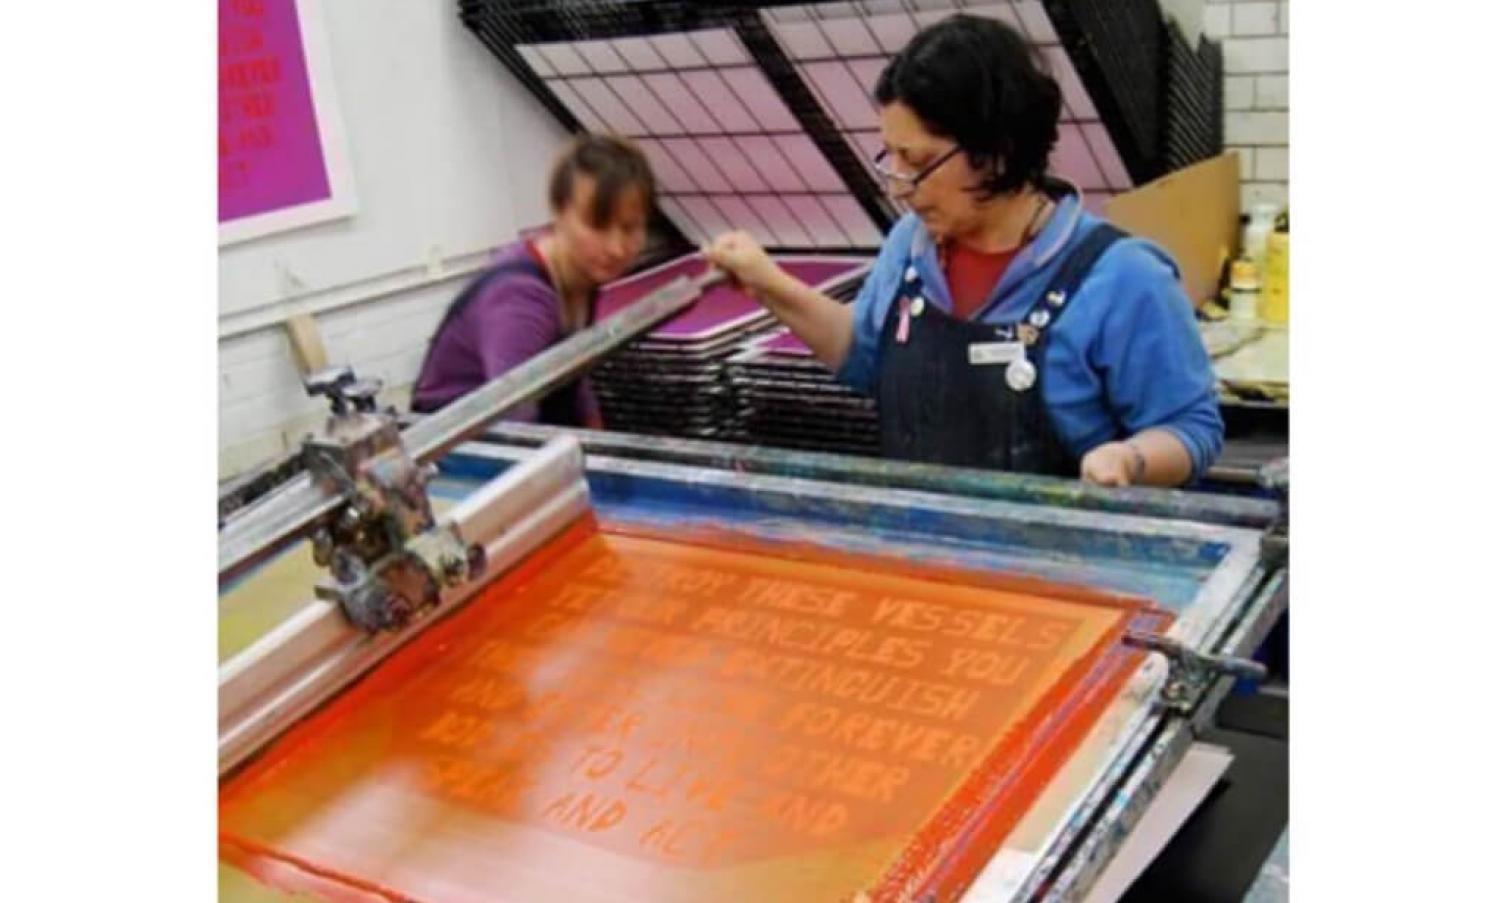 Edinburgh Printmakers screen printing